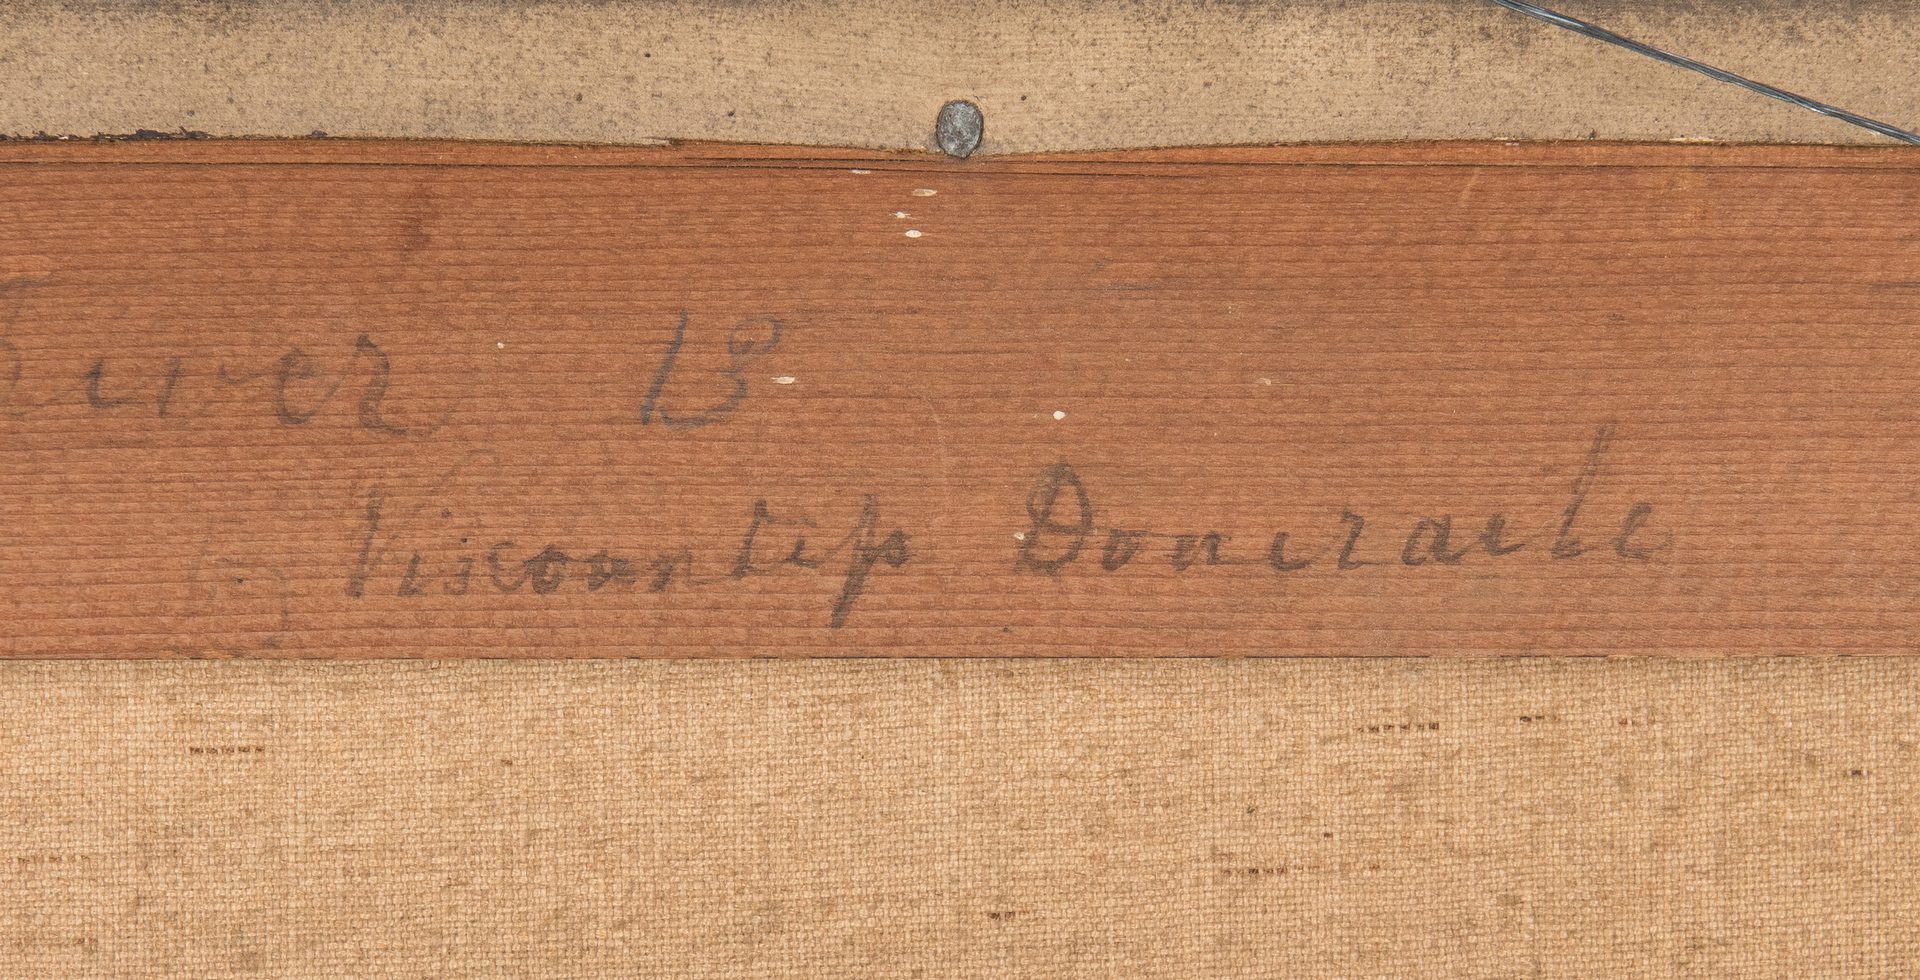 Lot 84: British School 19th C. Harbor Scene, Doneraile inscription